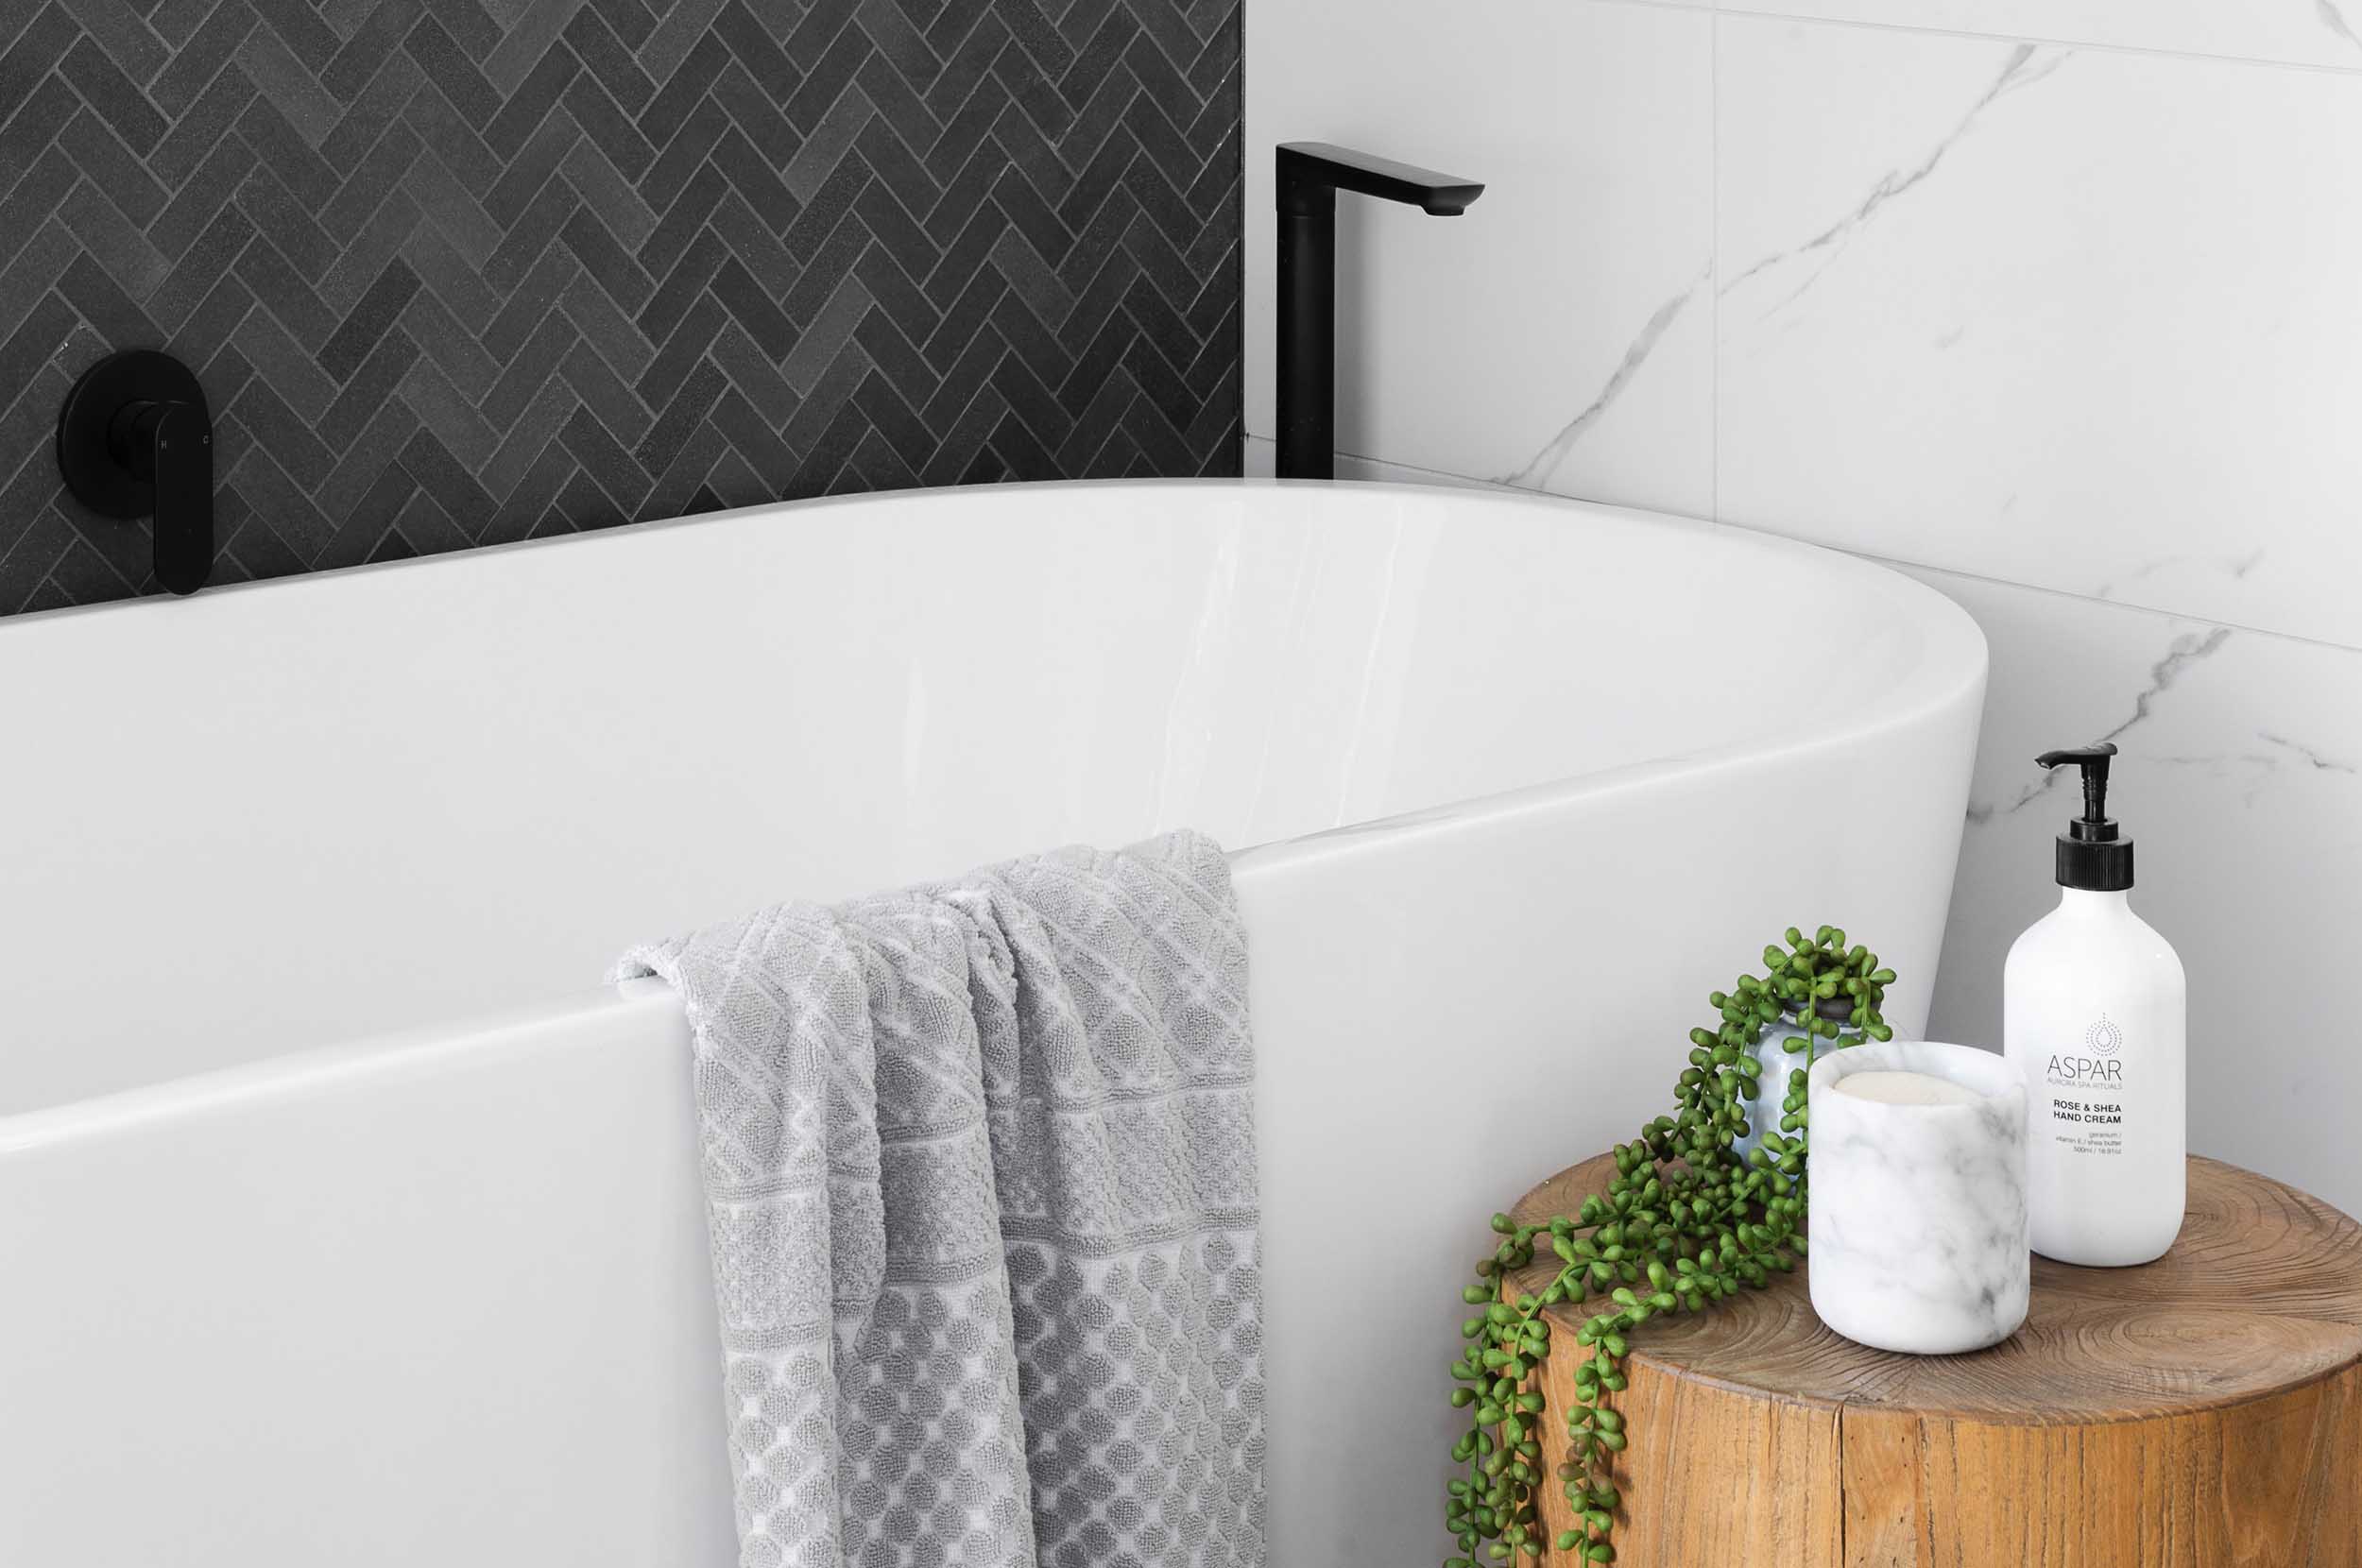 Nyrenoverat badrum med badkar, svart & marmor kakel och en trästubbe med en växt och doftljus. Tony Söderström Bygg & Kakel